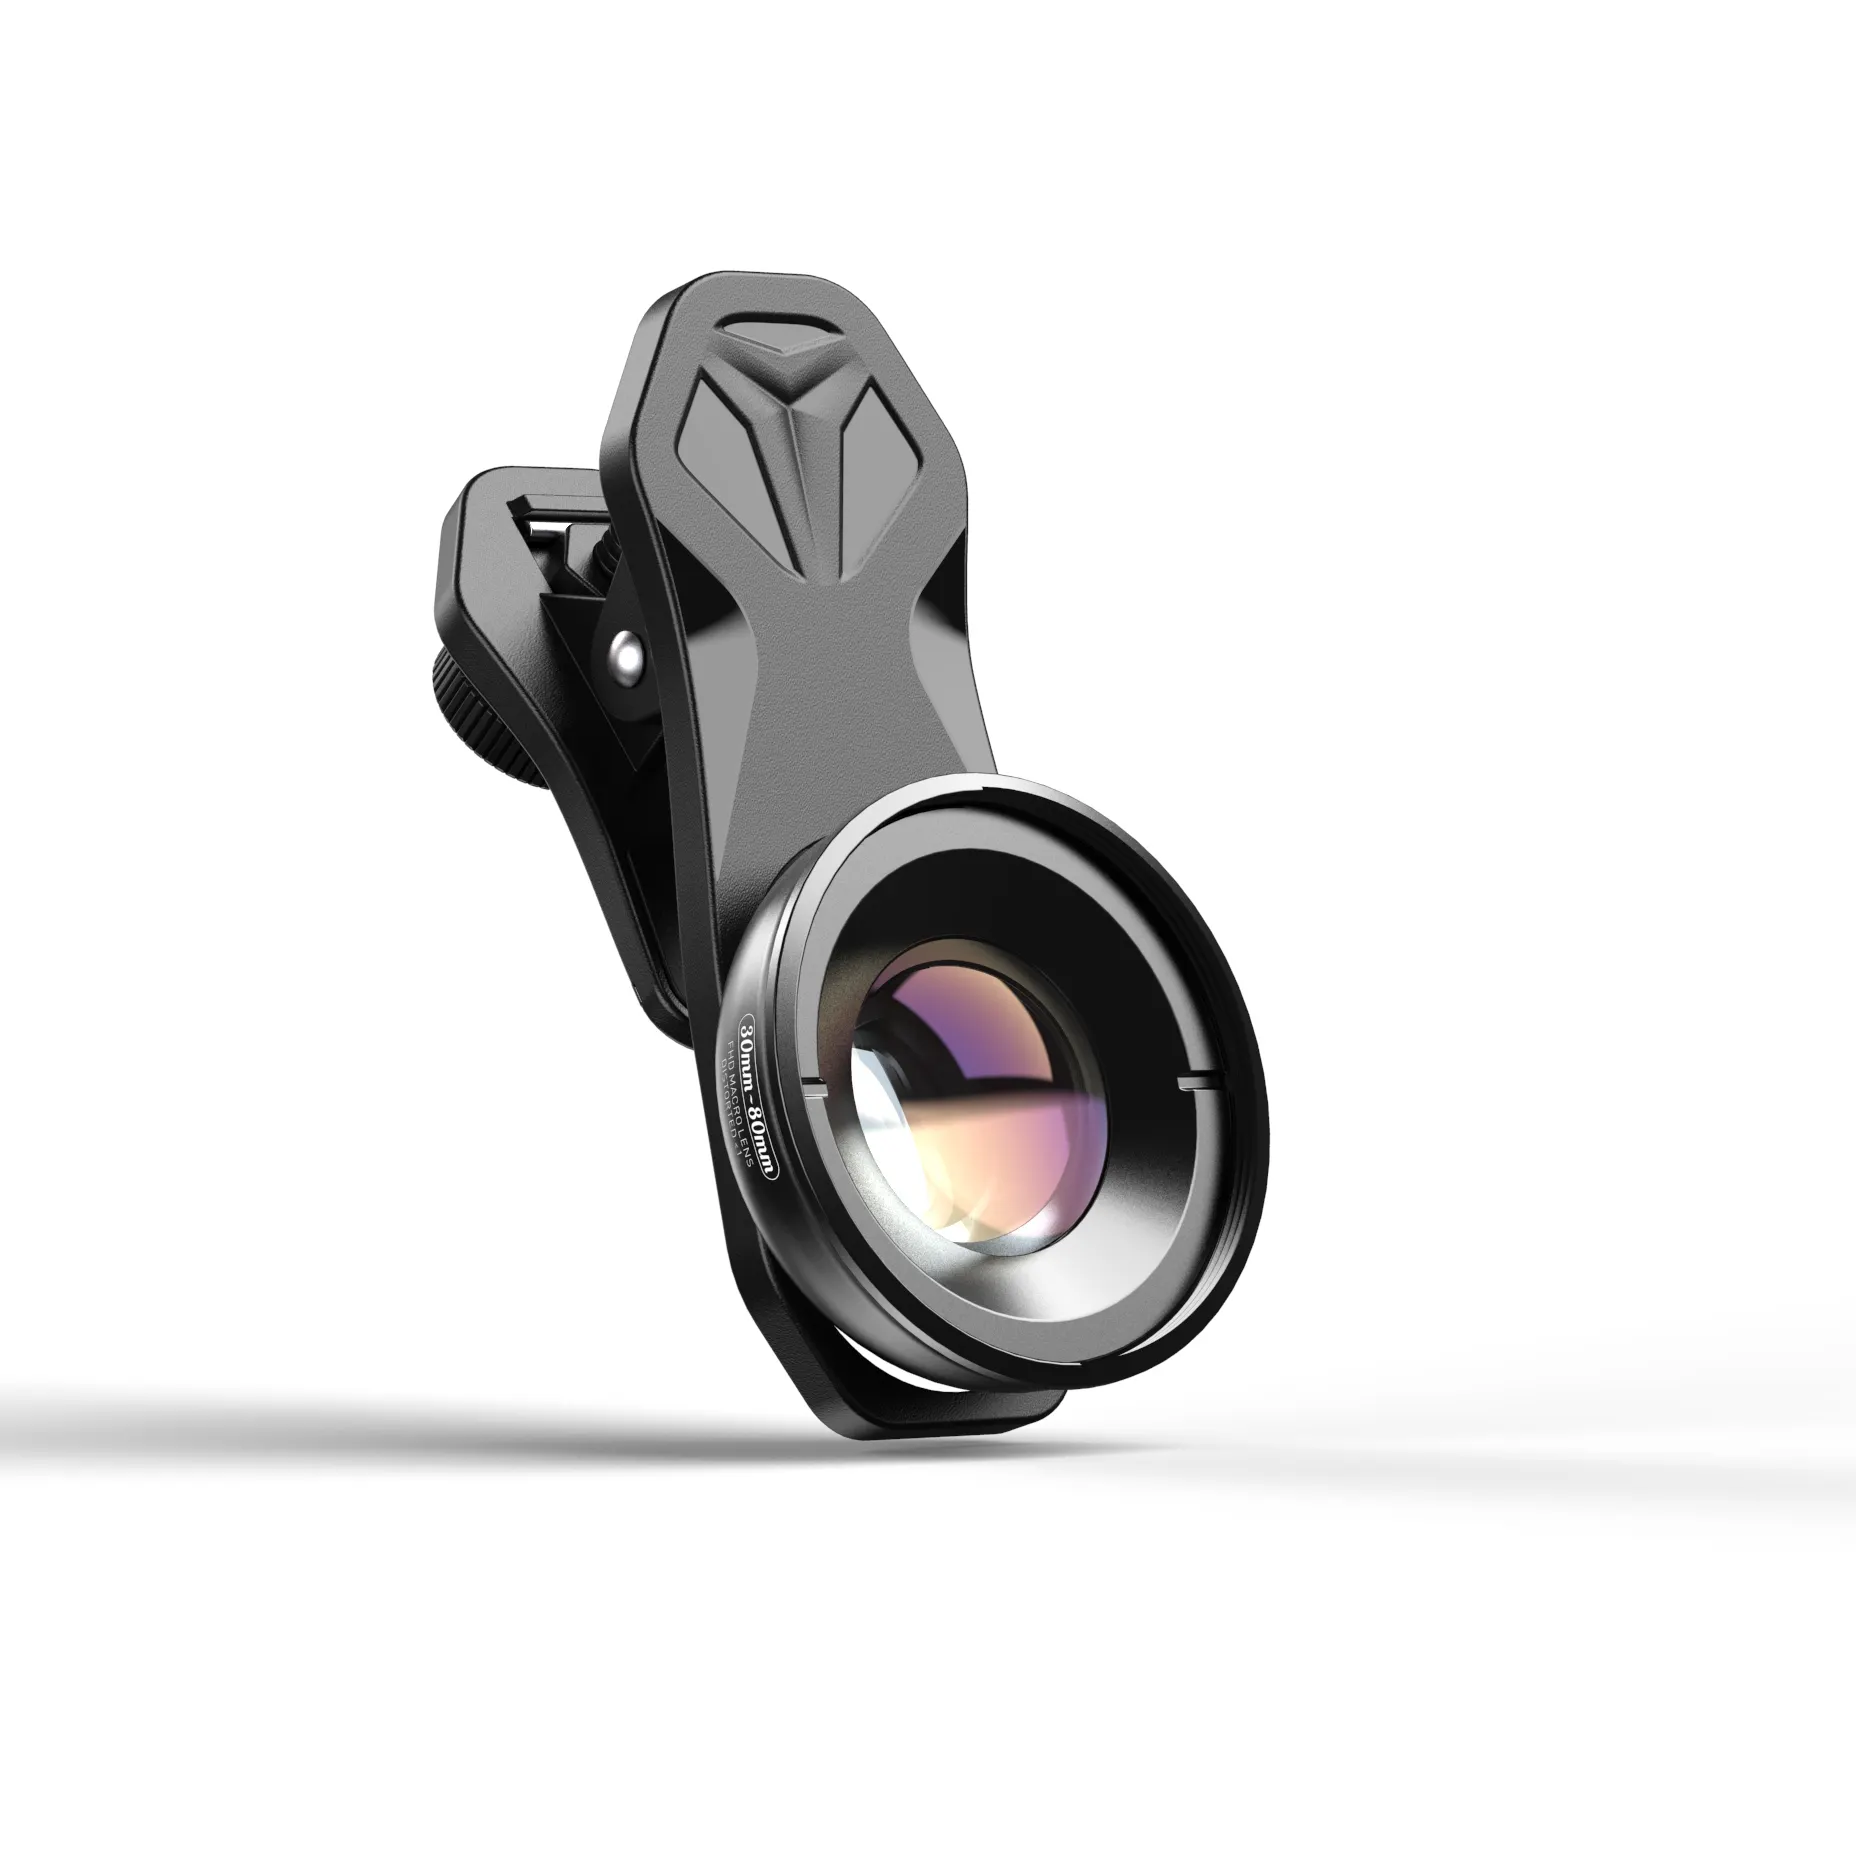 Apexel 30-80 millimetri del telefono mobile della macchina fotografica obiettivo macro Ciglia Gioielli Le Riprese Macro lens Per Smartphone